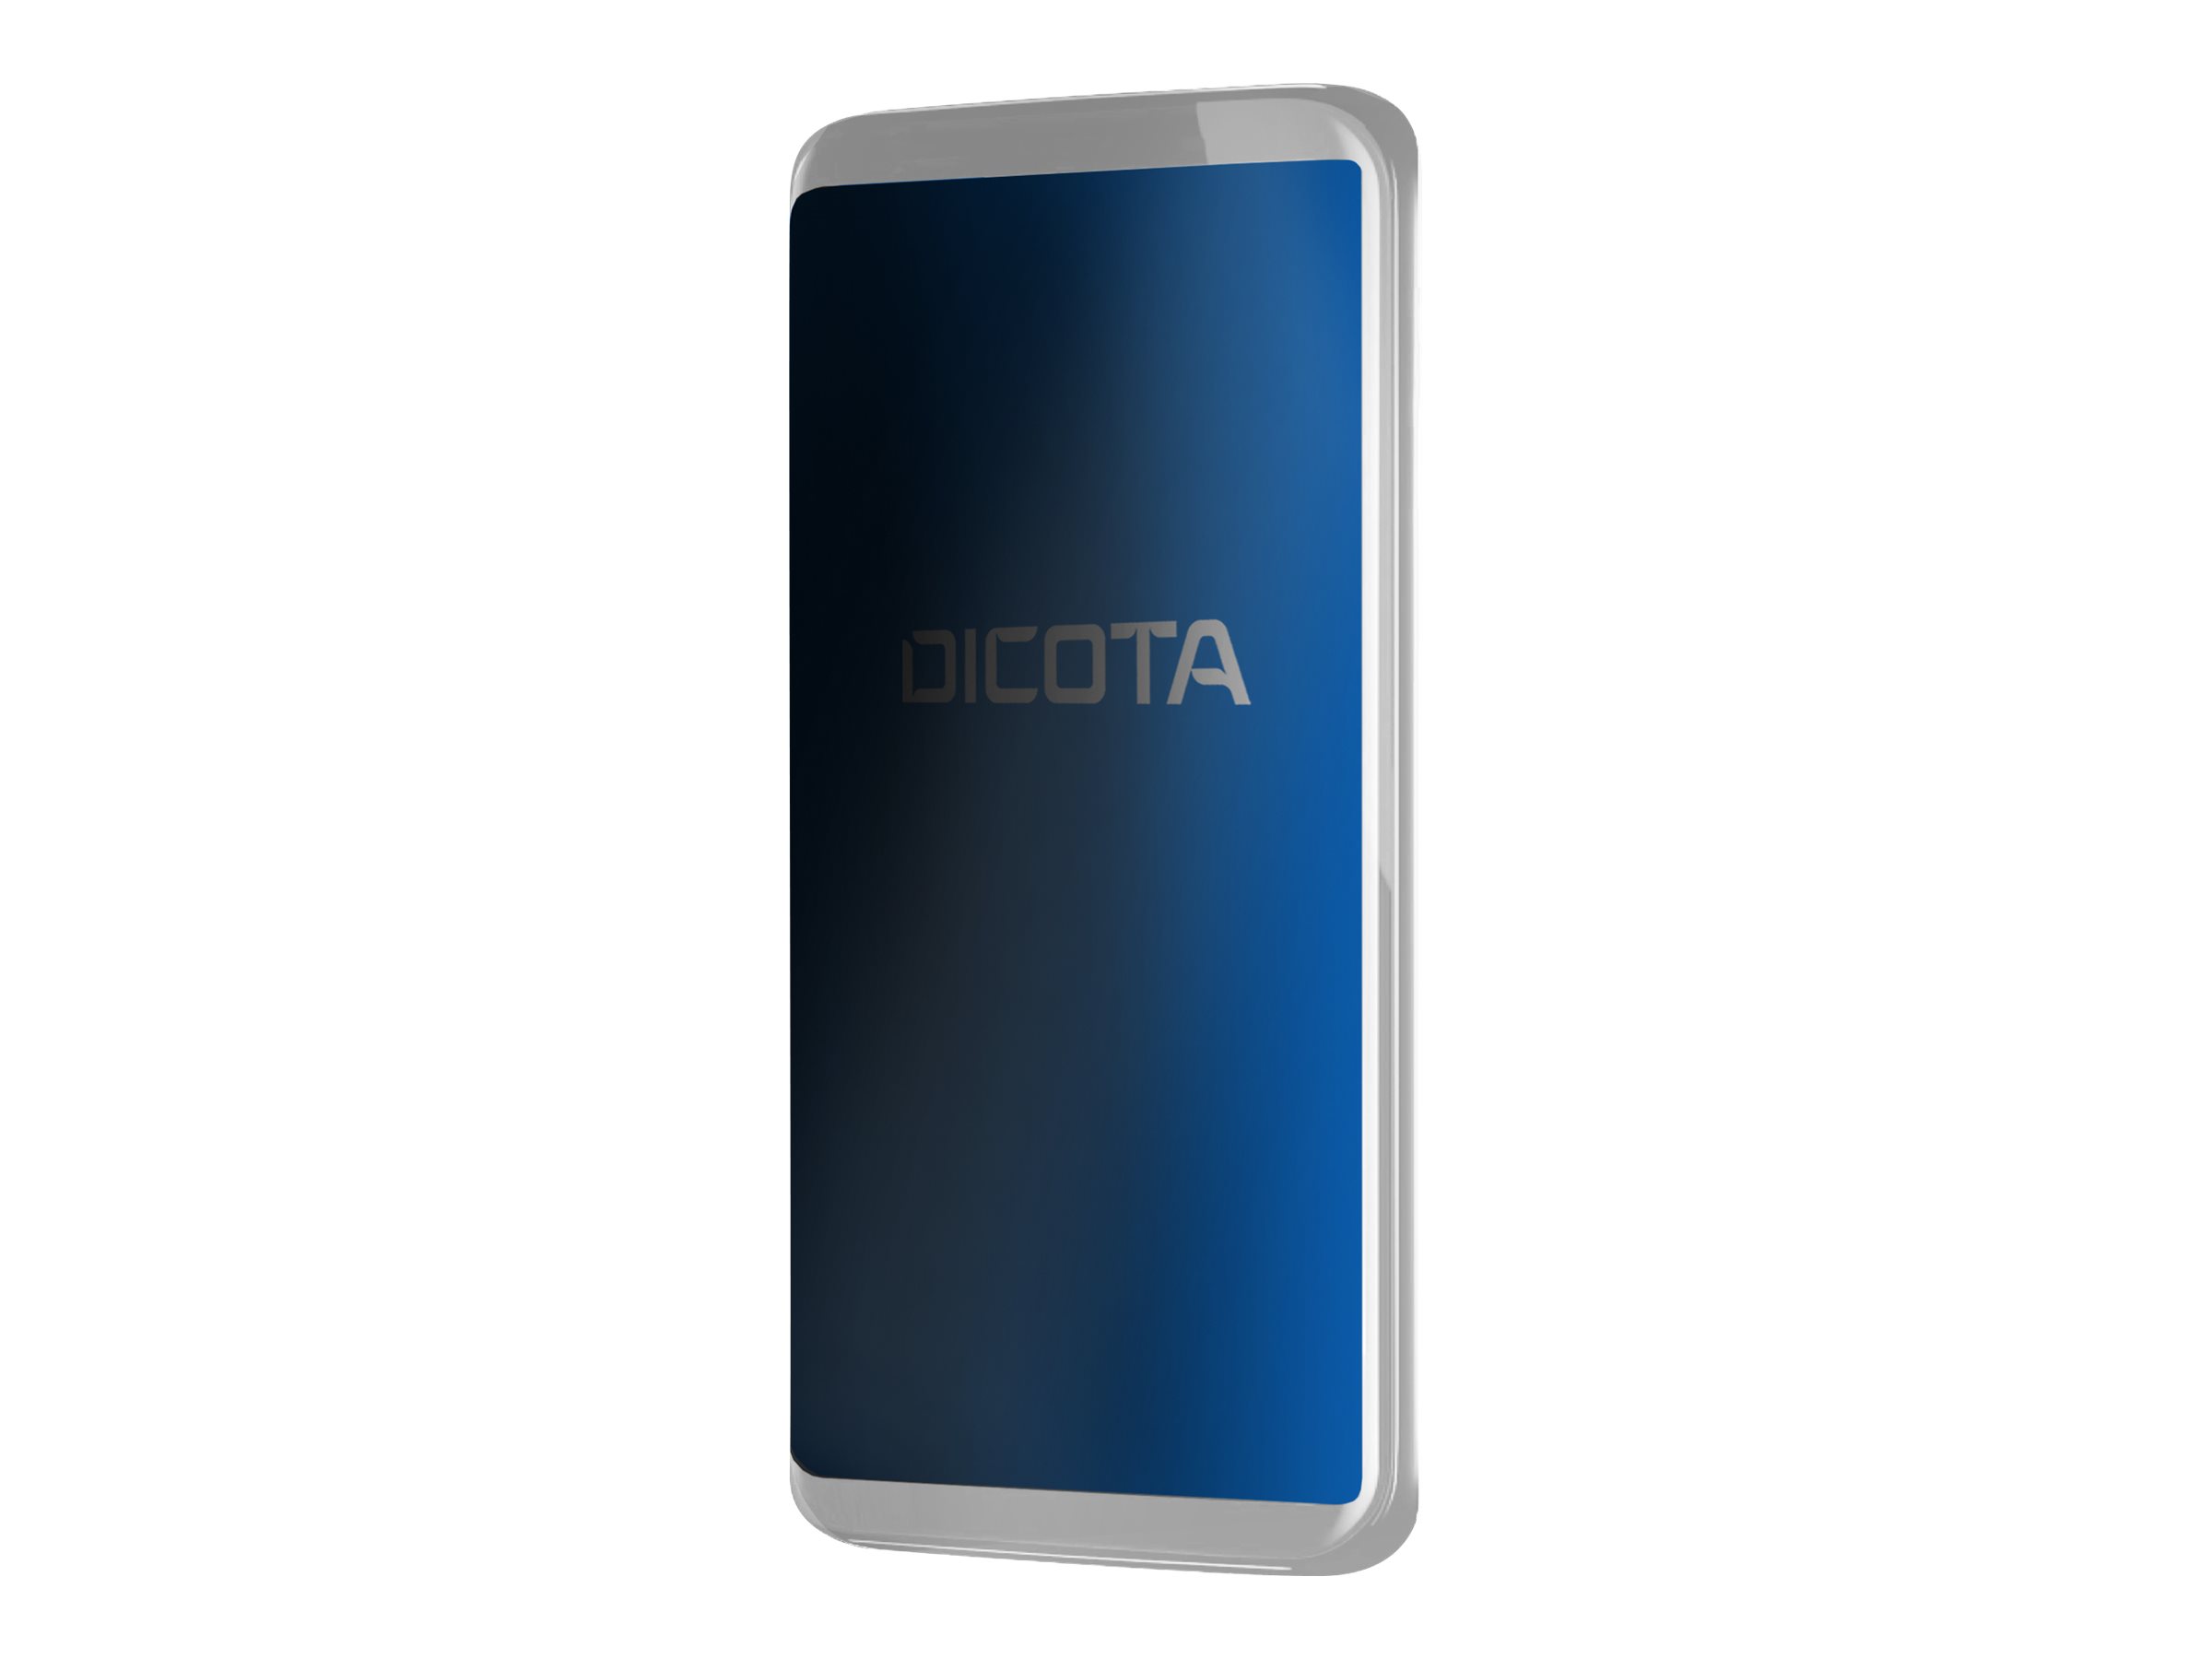 DICOTA - Filtre de confidentialité pour écran pour téléphone portable - 4 voies - amovible - adhésif - pour Samsung Galaxy A40 - D70377 - Accessoires pour téléphone portable